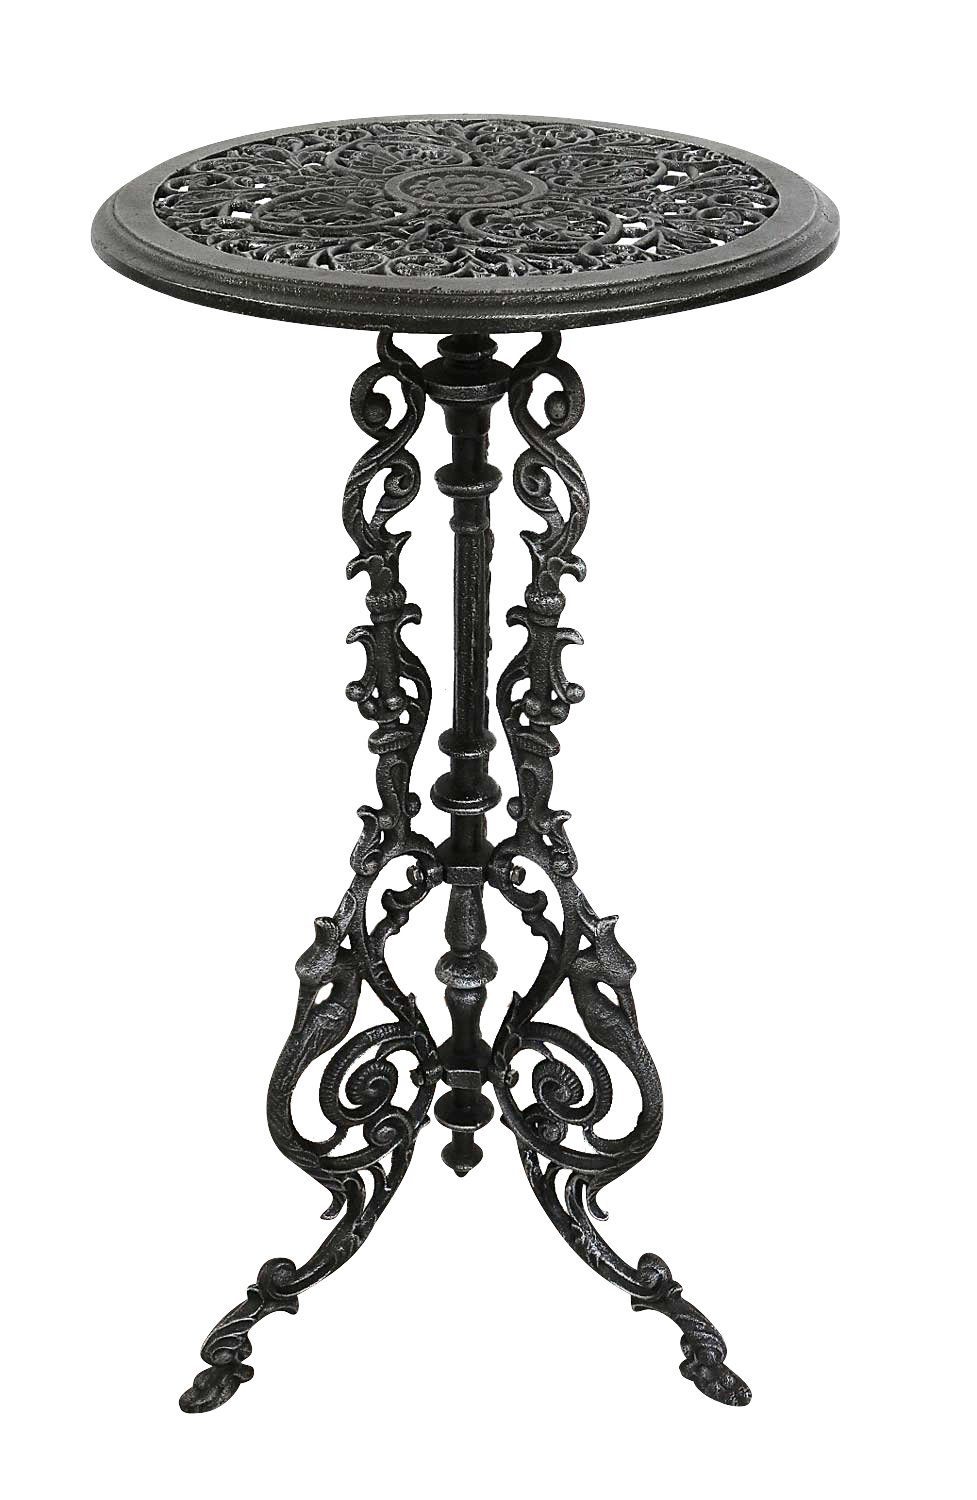 Antik-Stil Tisch Gartentisch Gartentisch Eisen Farbe silber-sch Beistelltisch Aubaho 72cm